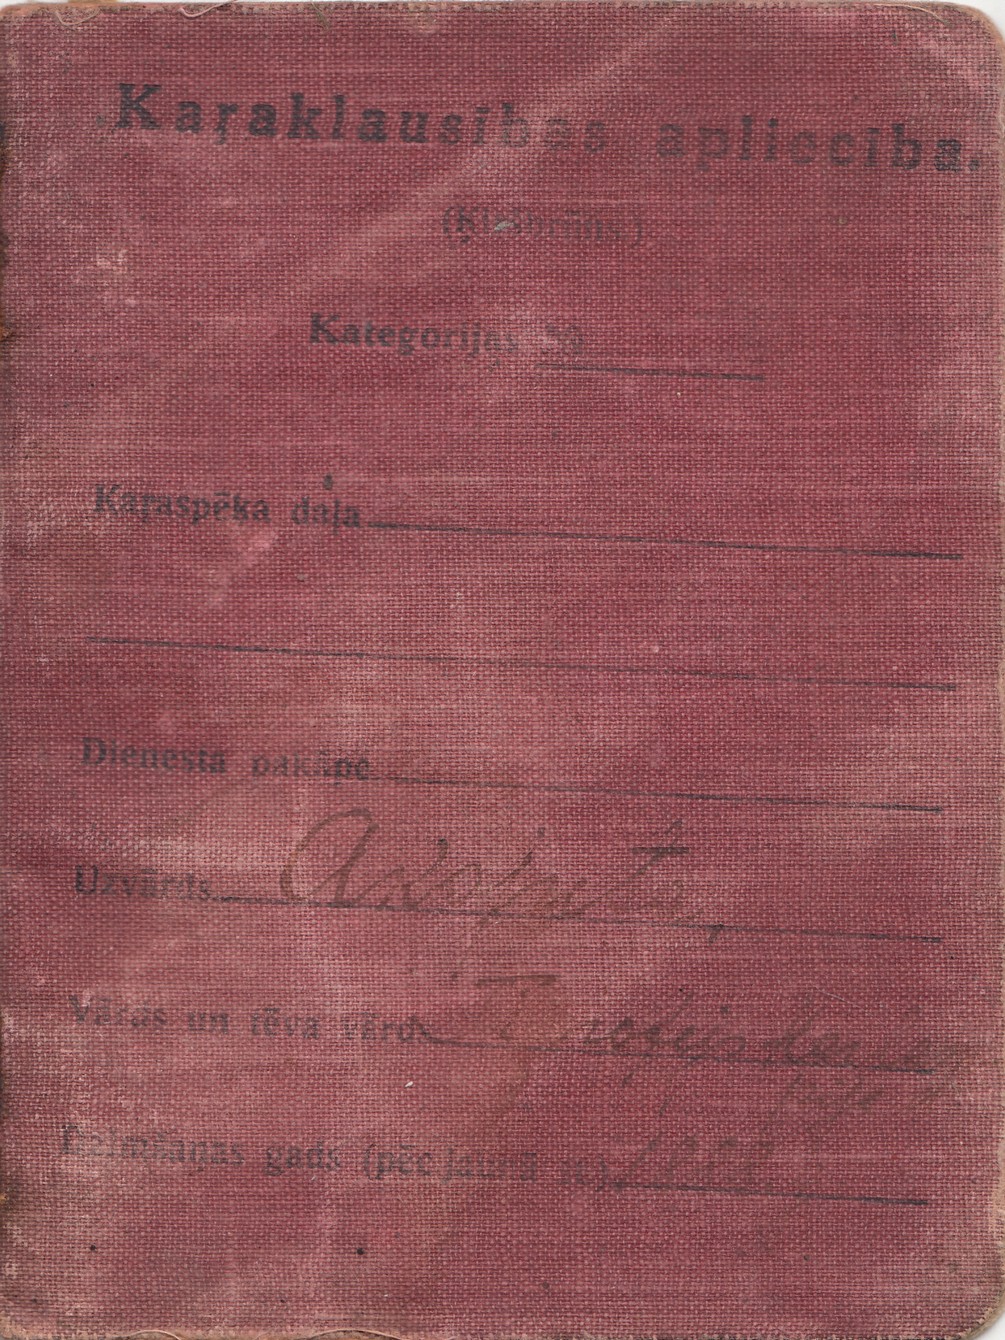 Latvian Pre-War Soldbook